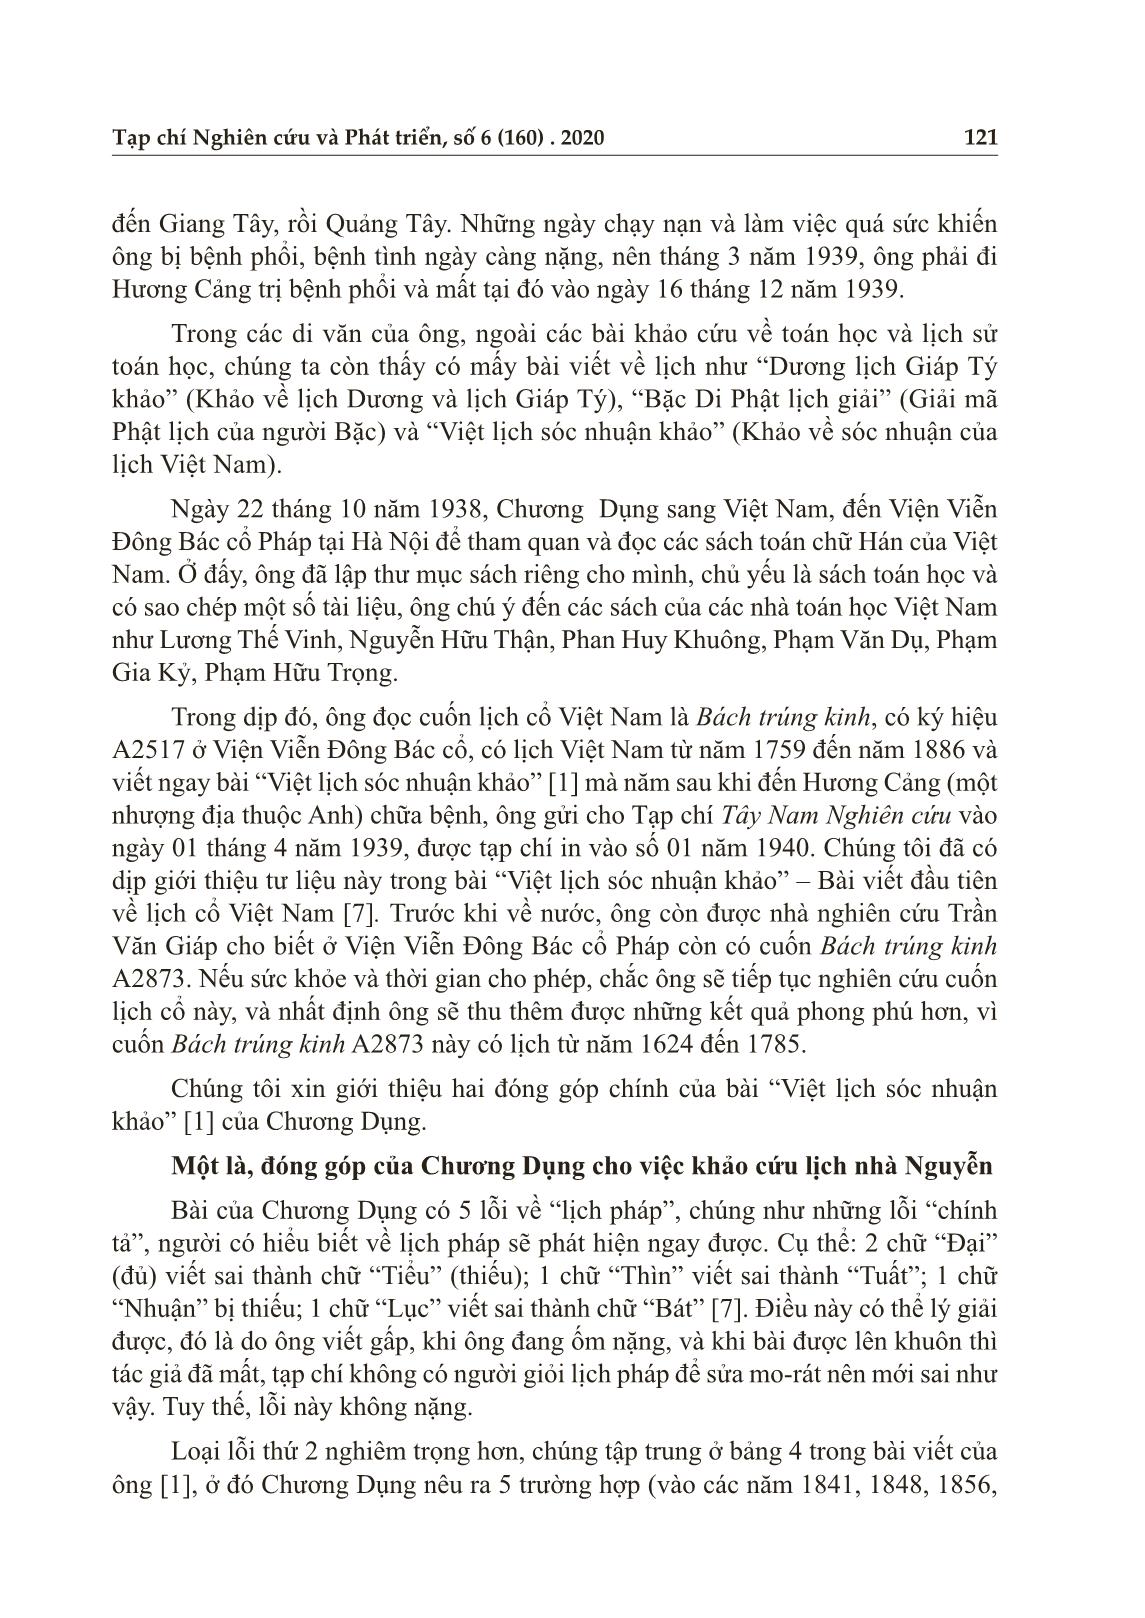 Đóng góp của Chương Dụng vào nghiên cứu lịch cổ Việt Nam trang 3